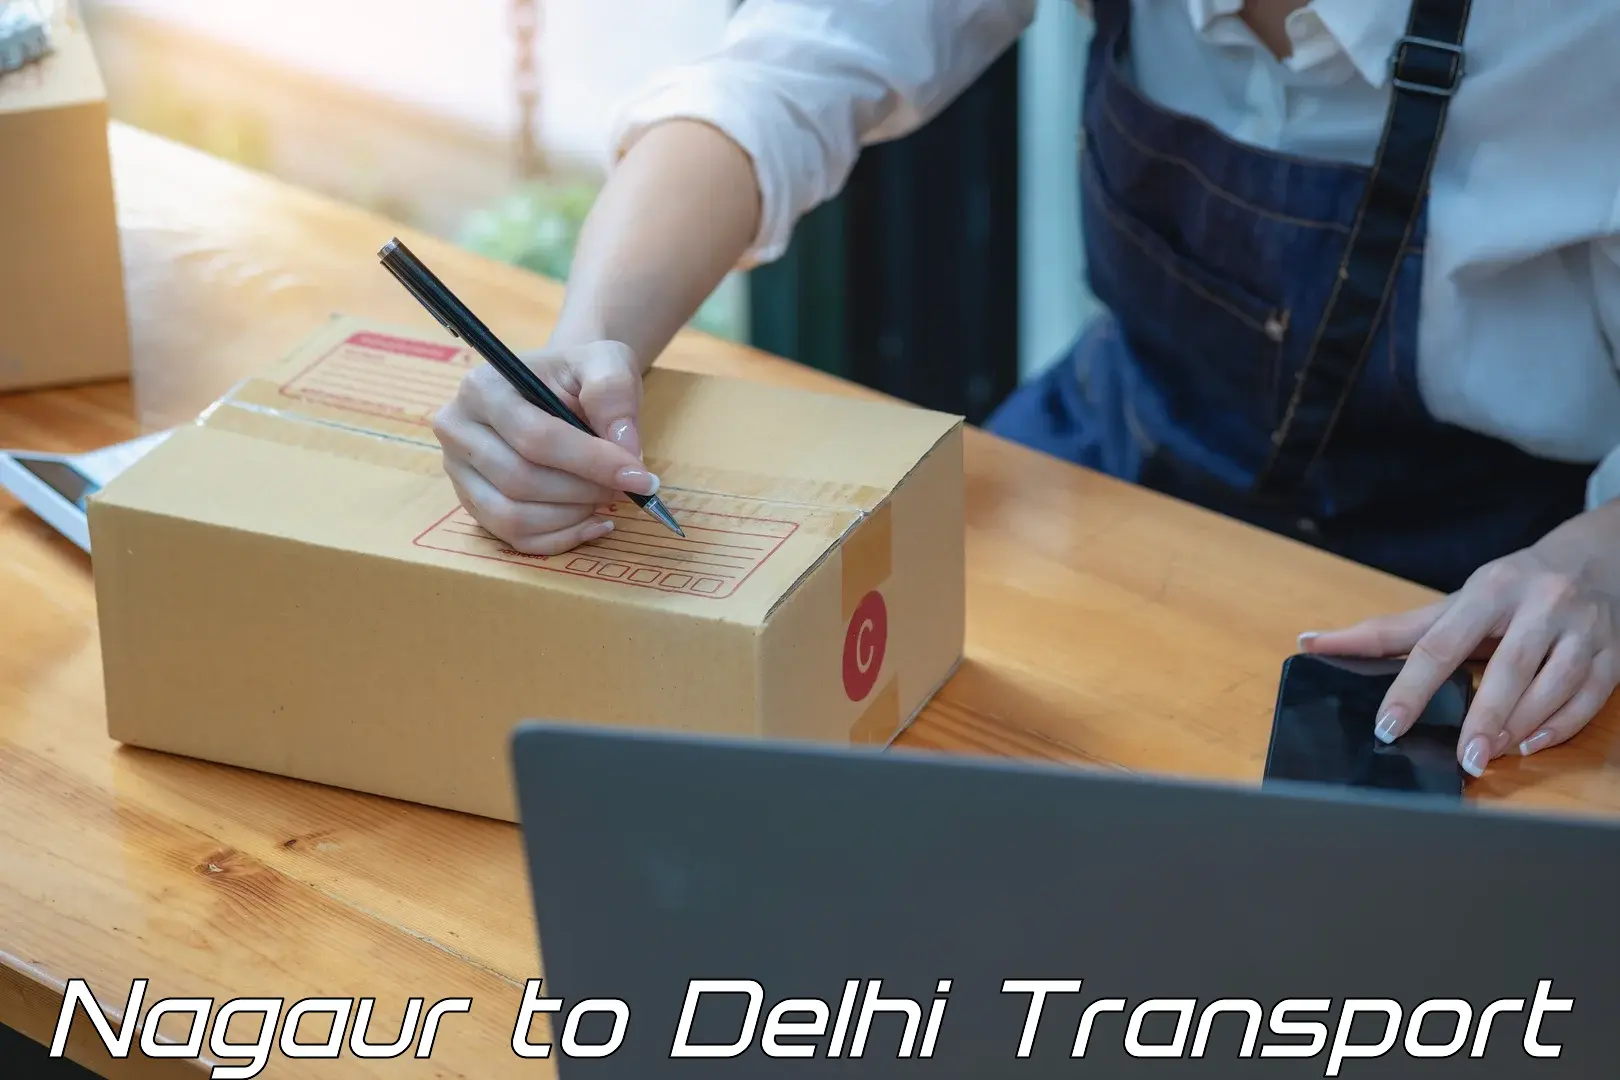 Transport shared services Nagaur to Delhi Technological University DTU